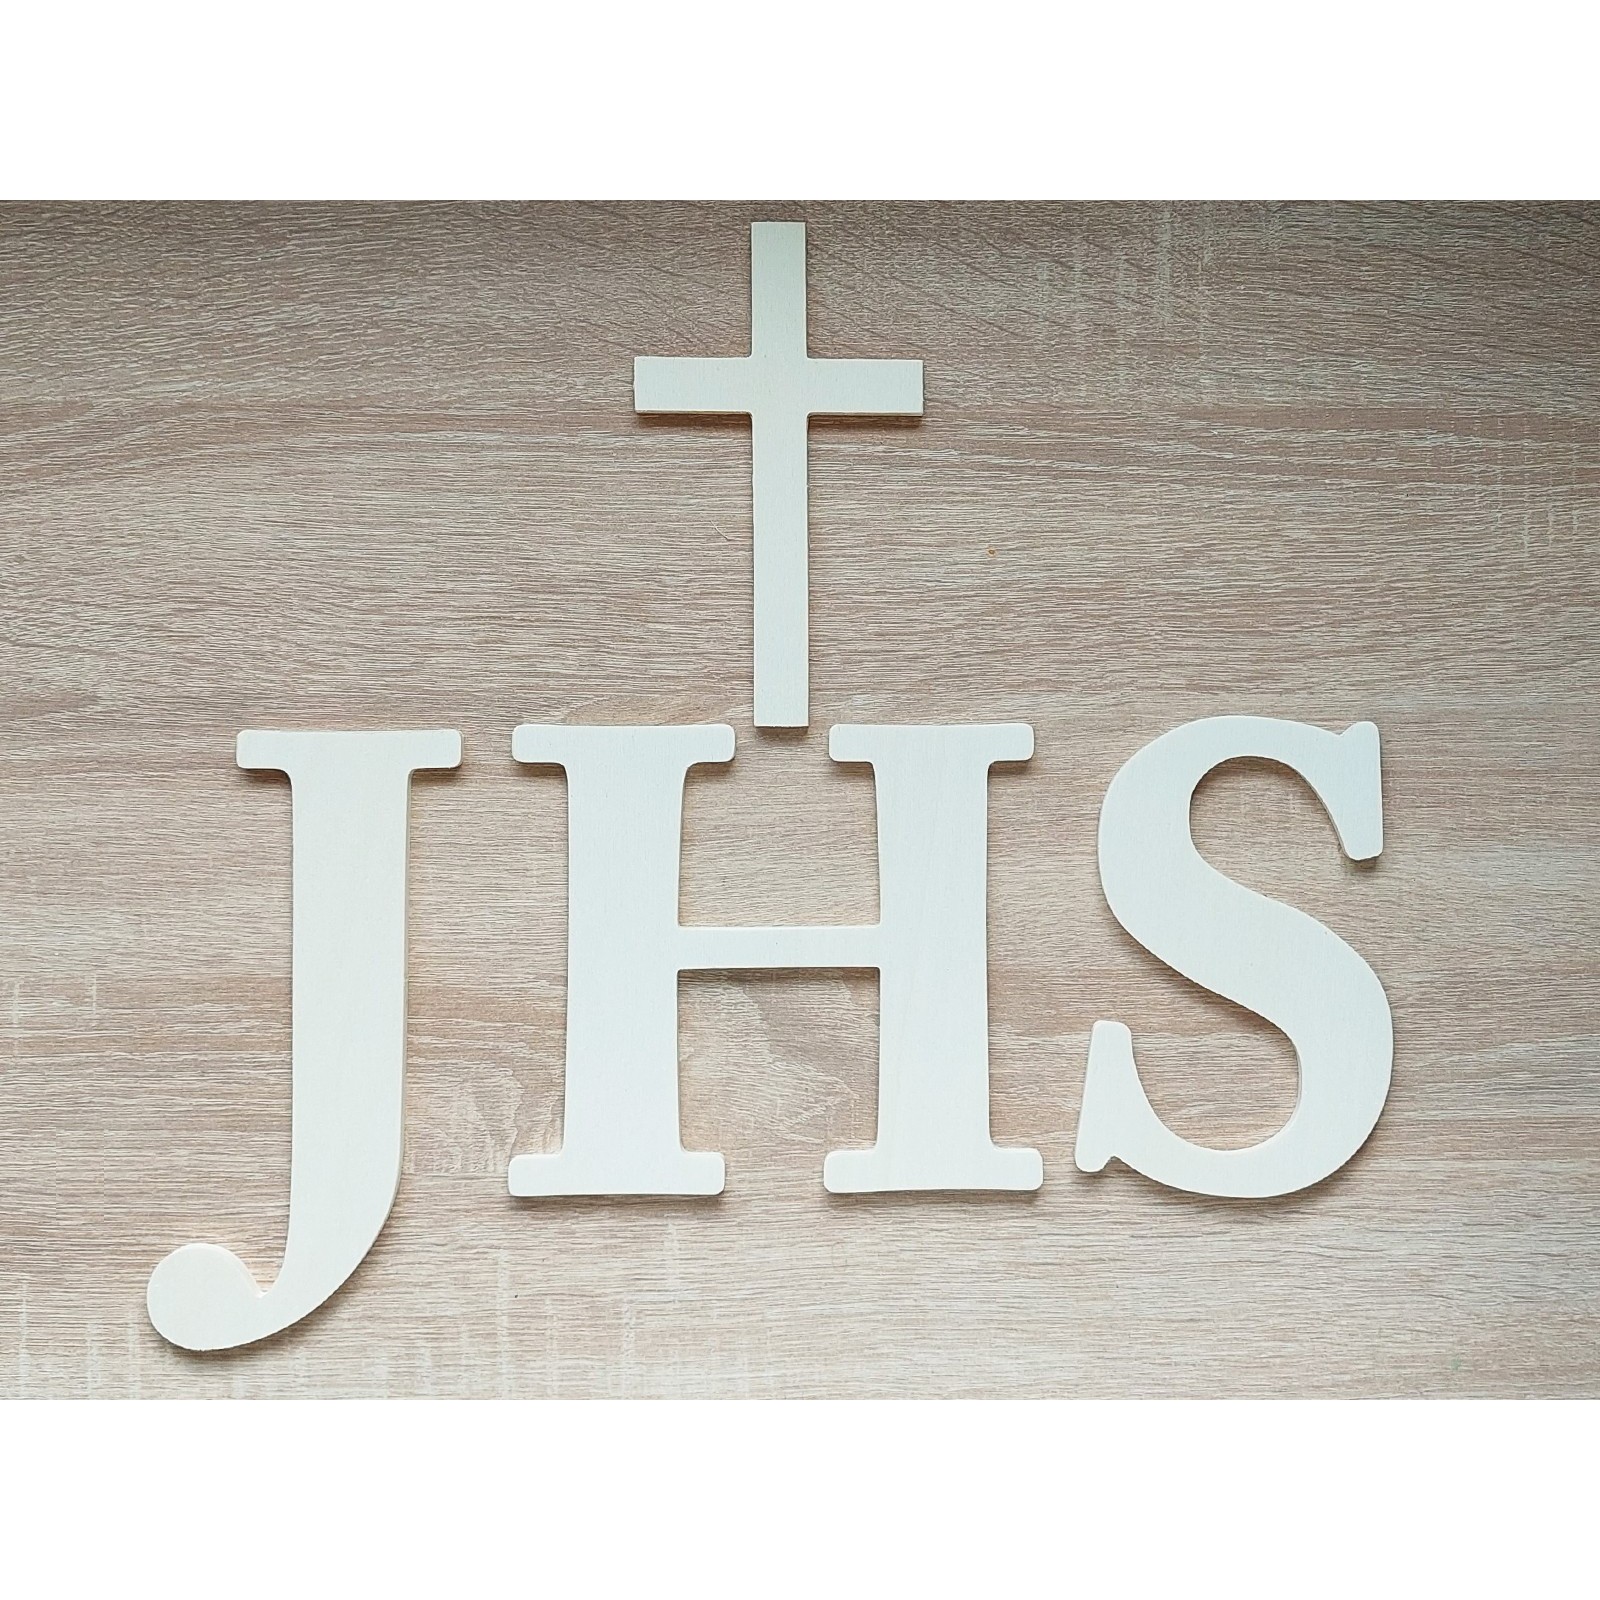 Hölzerne christliche Inschrift - JHS und ein Kreuz, Breite 42 cm